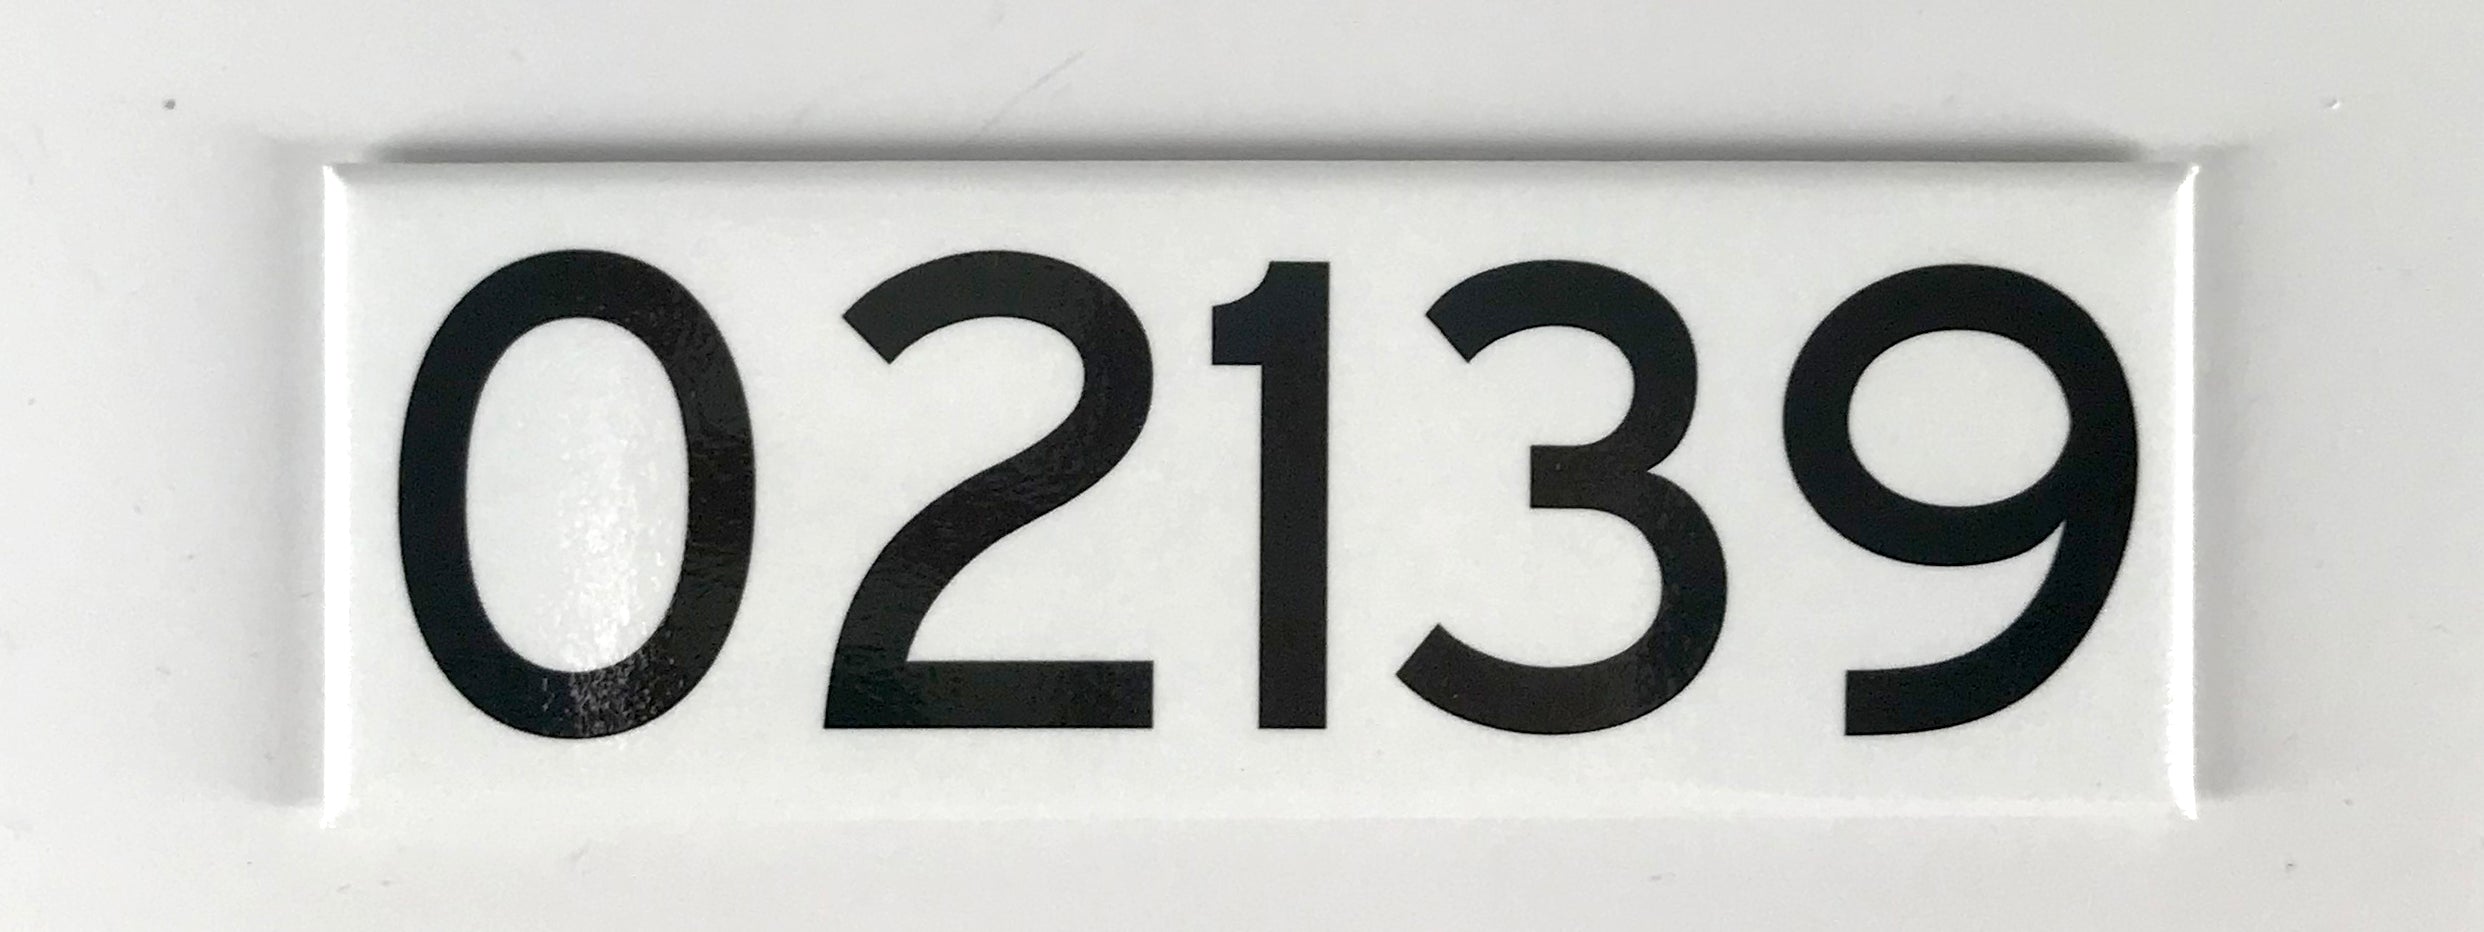 Cambridge, Massachusetts 02139 ZIP Code Magnet